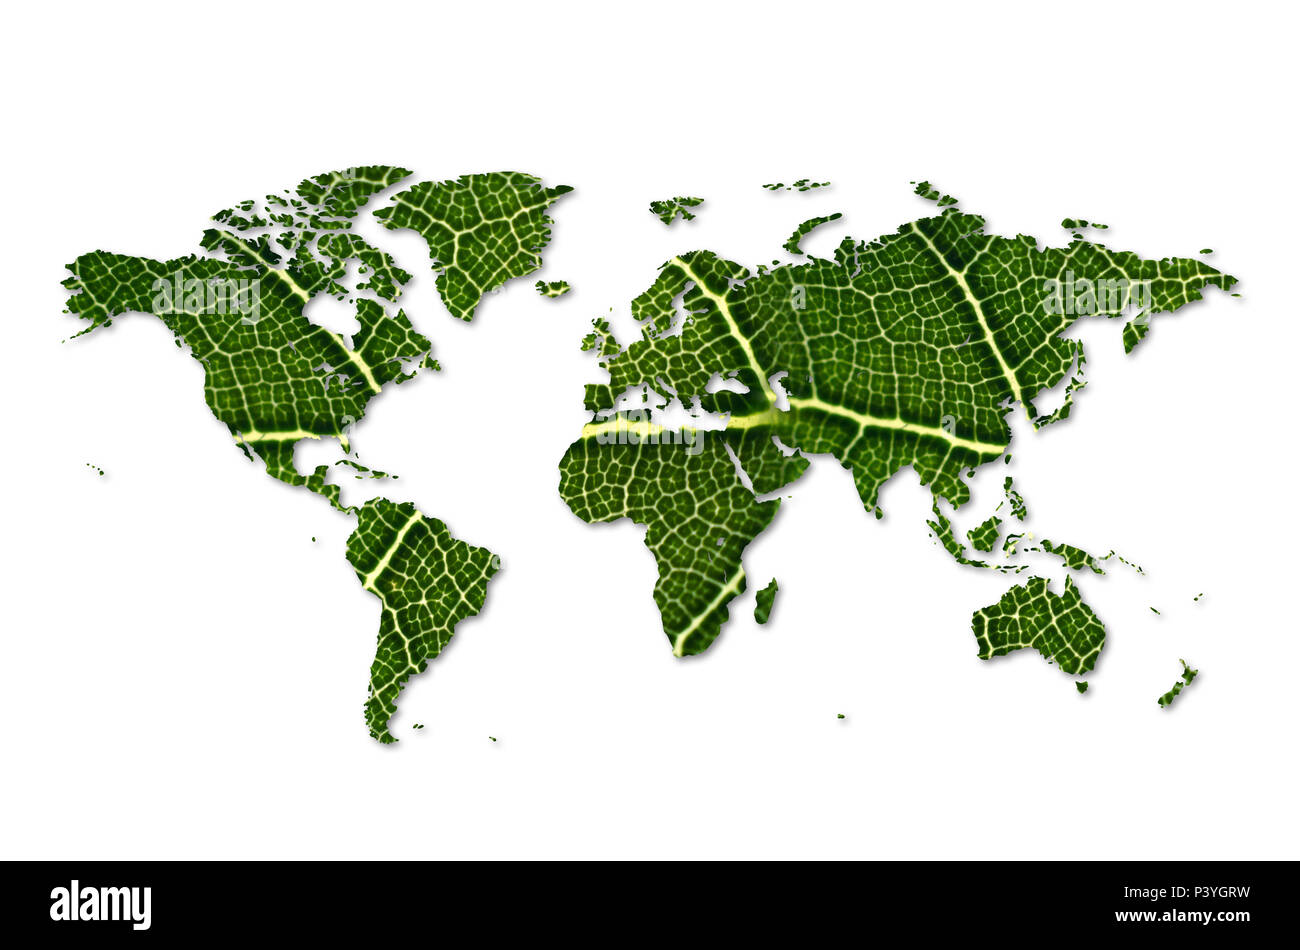 Eco mapa del mundo hecho de hojas verdes de hojas verdes Mapa concepto de conservación del medio ambiente Foto de stock